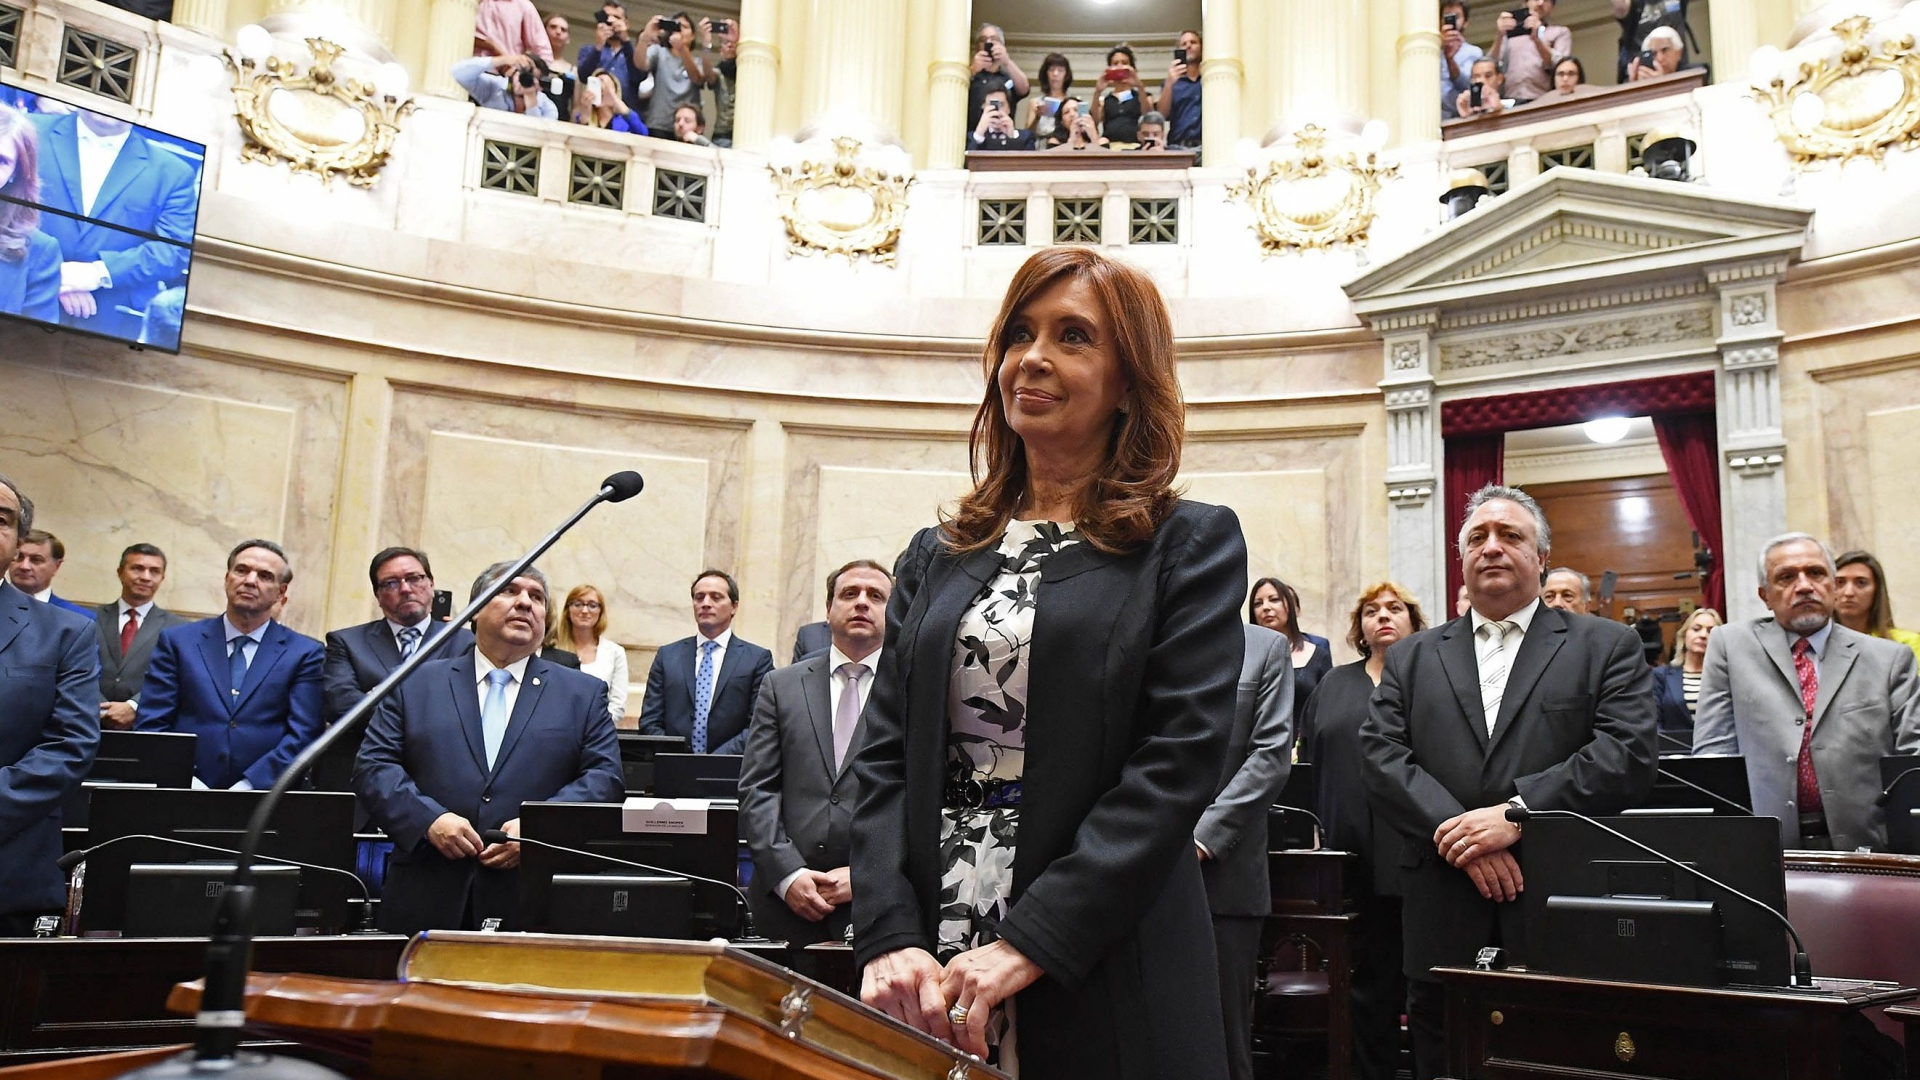 Cristina Fernandez de Kirchner bei ihrer Vereidigung als Senatorin im Kongress von Buenos Aires.  | AFP